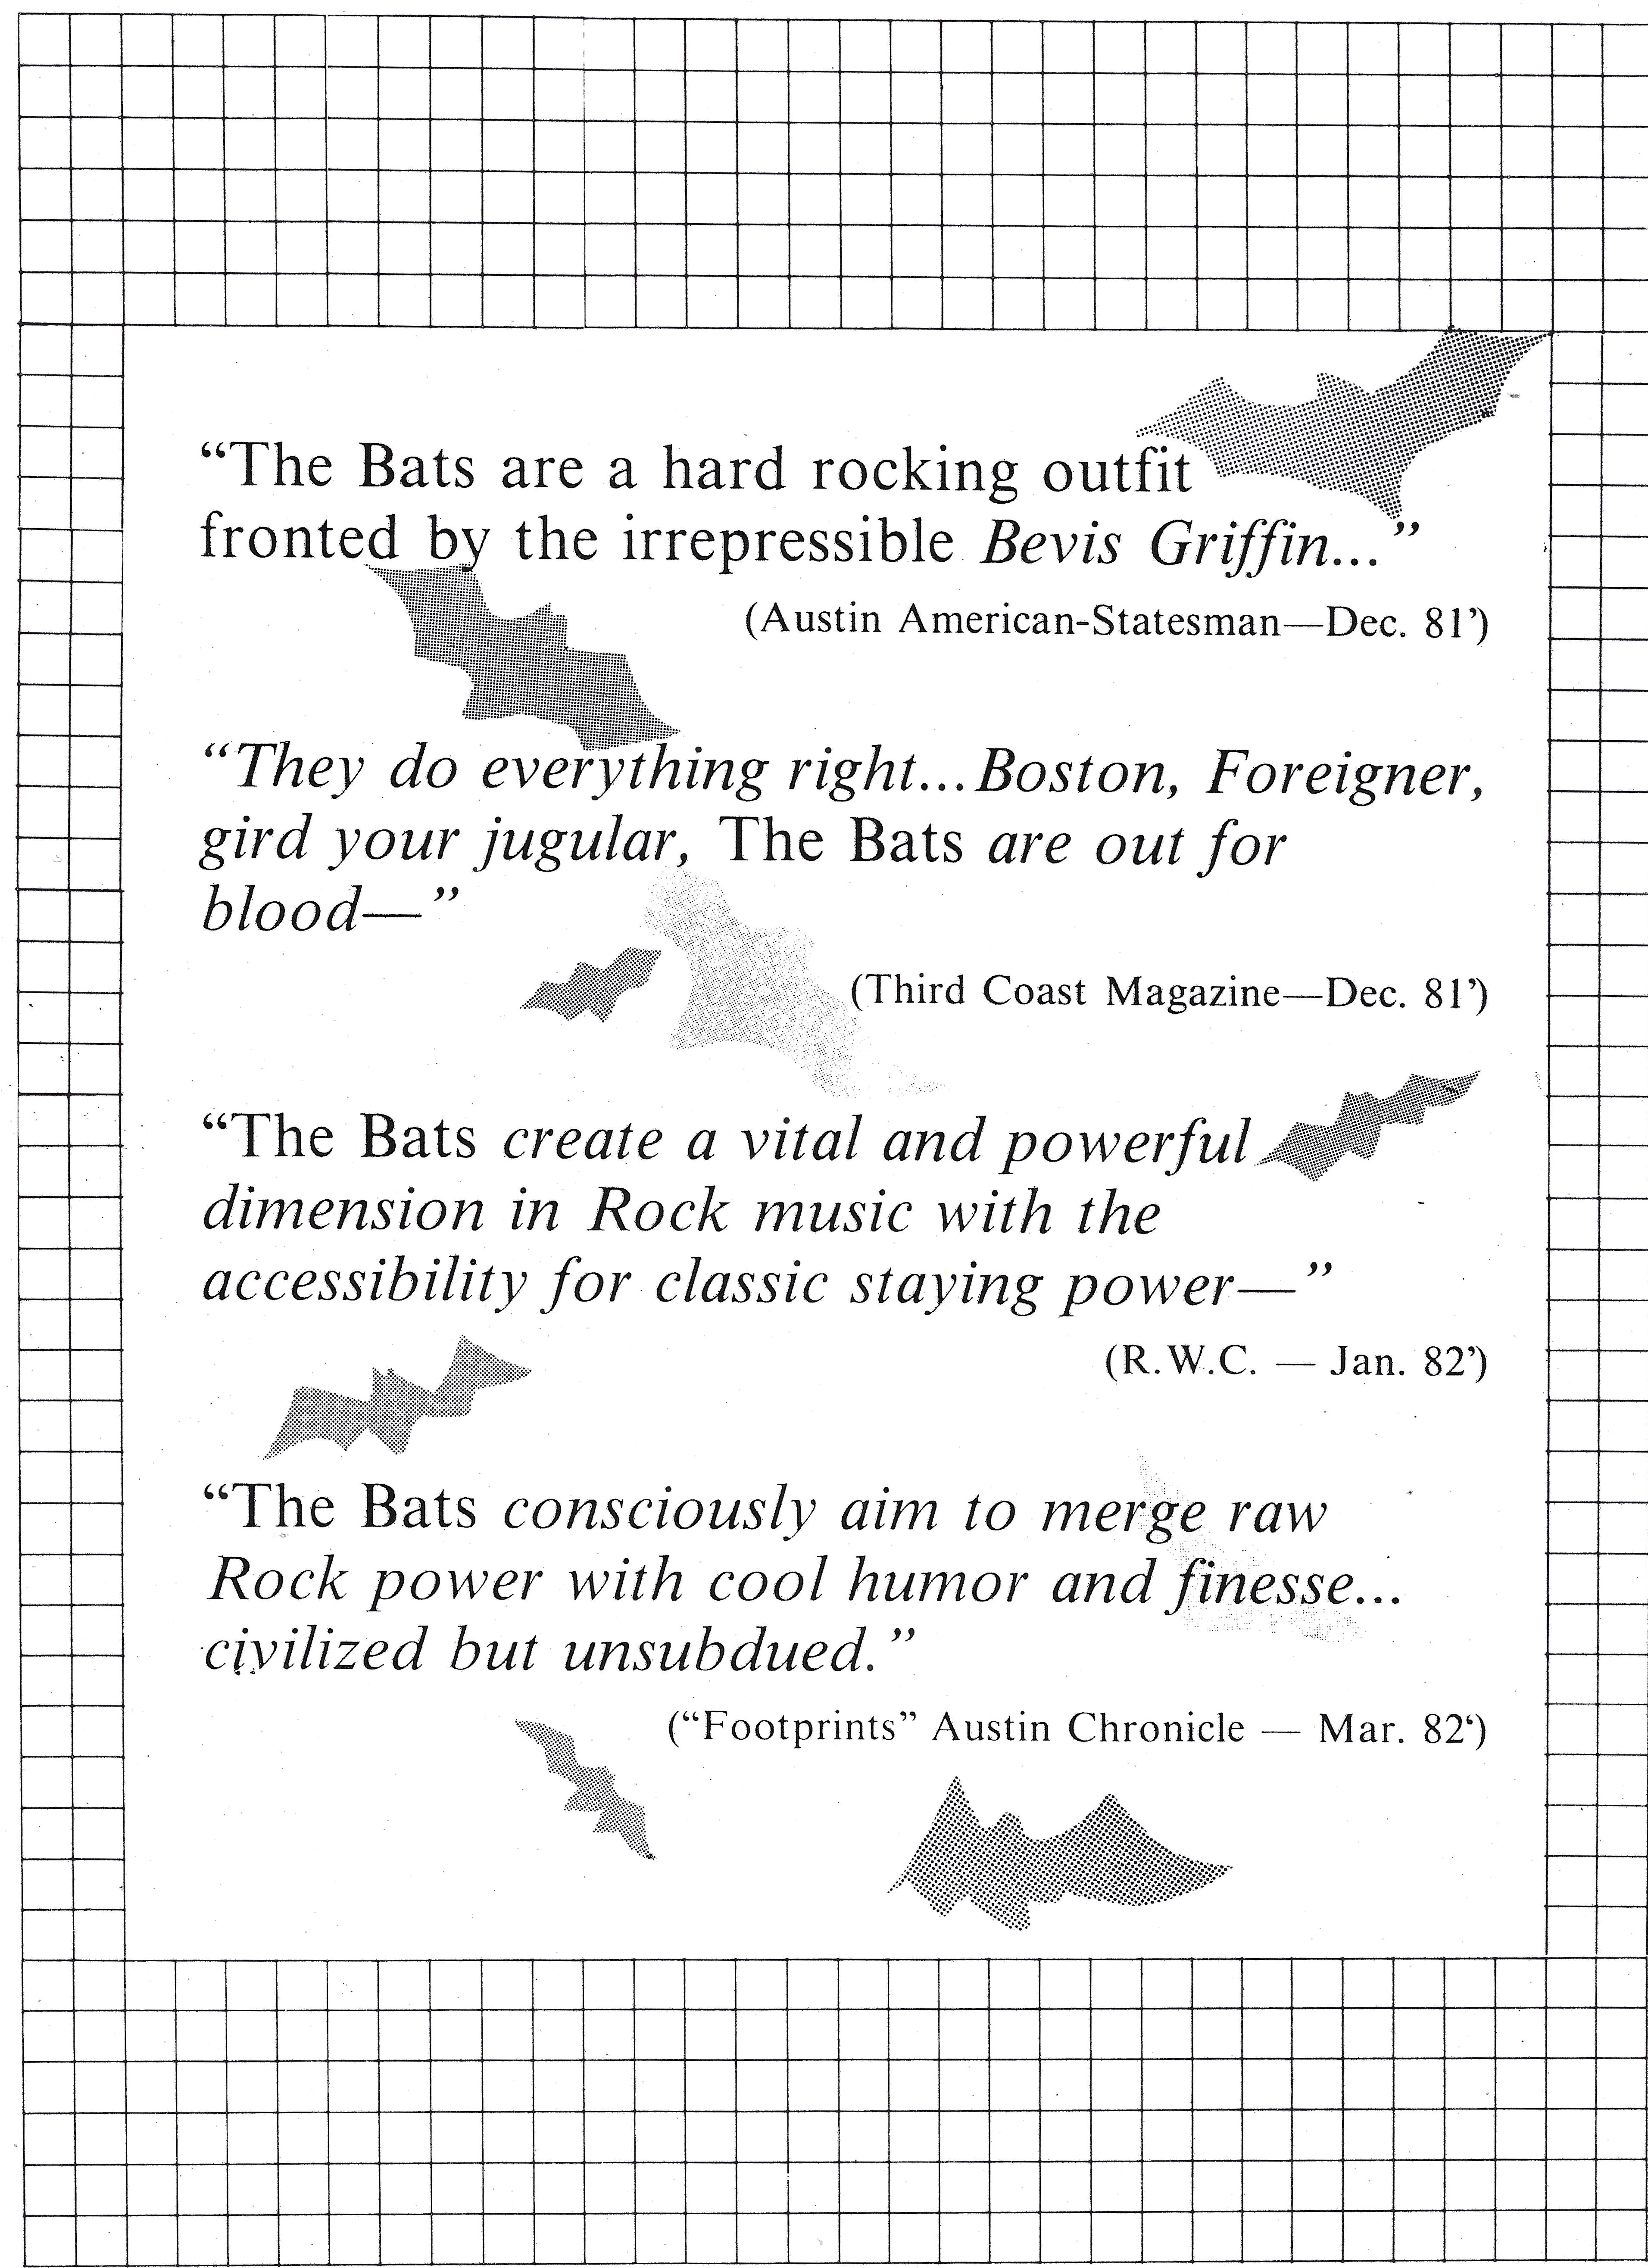 The Bats promotion